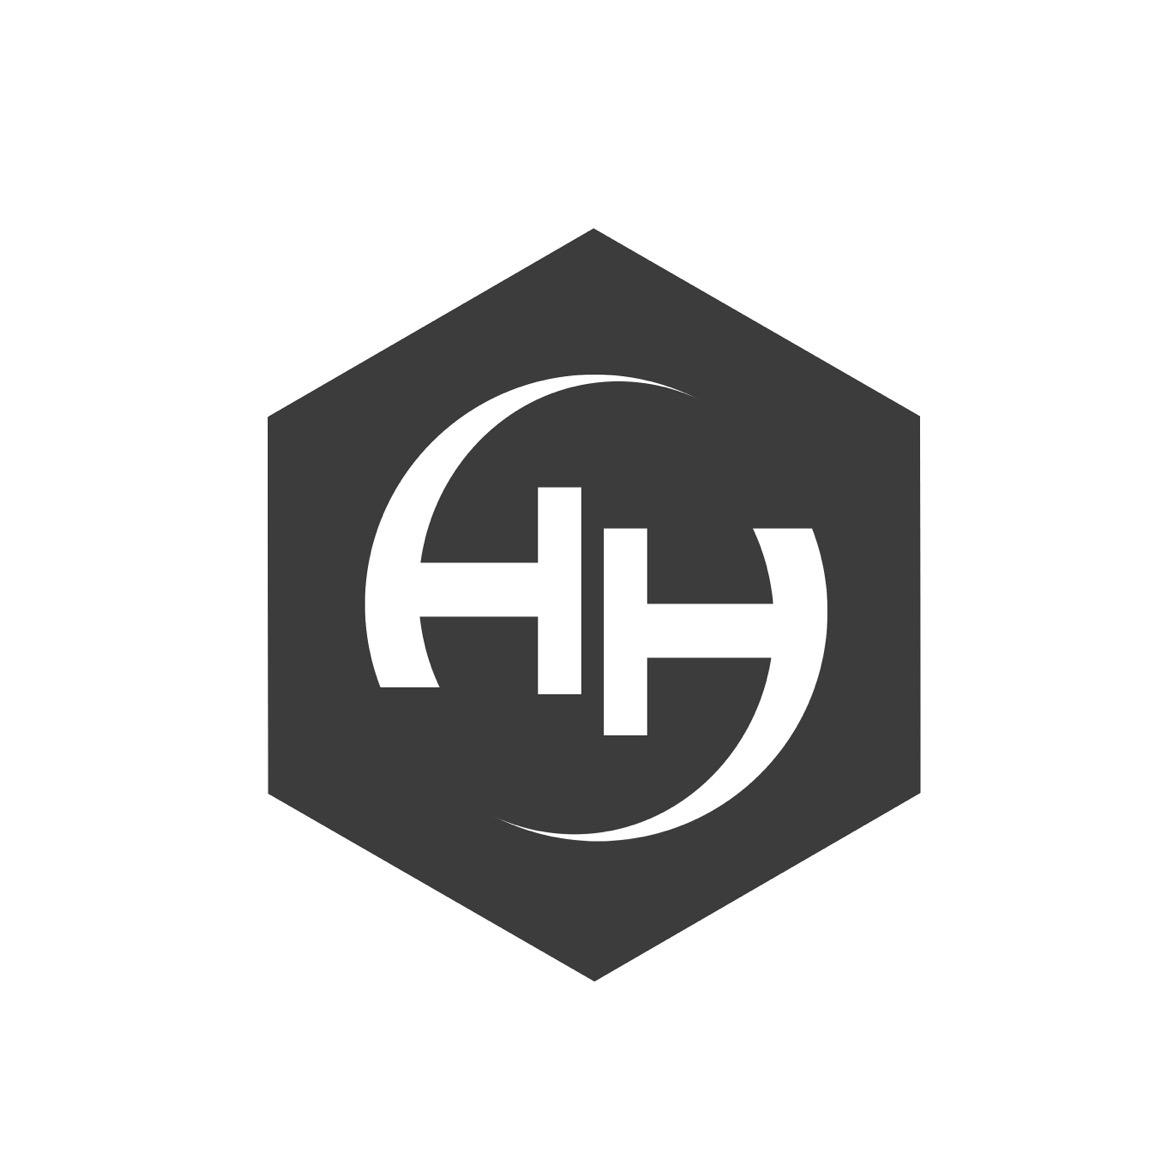 hh组合logo图片